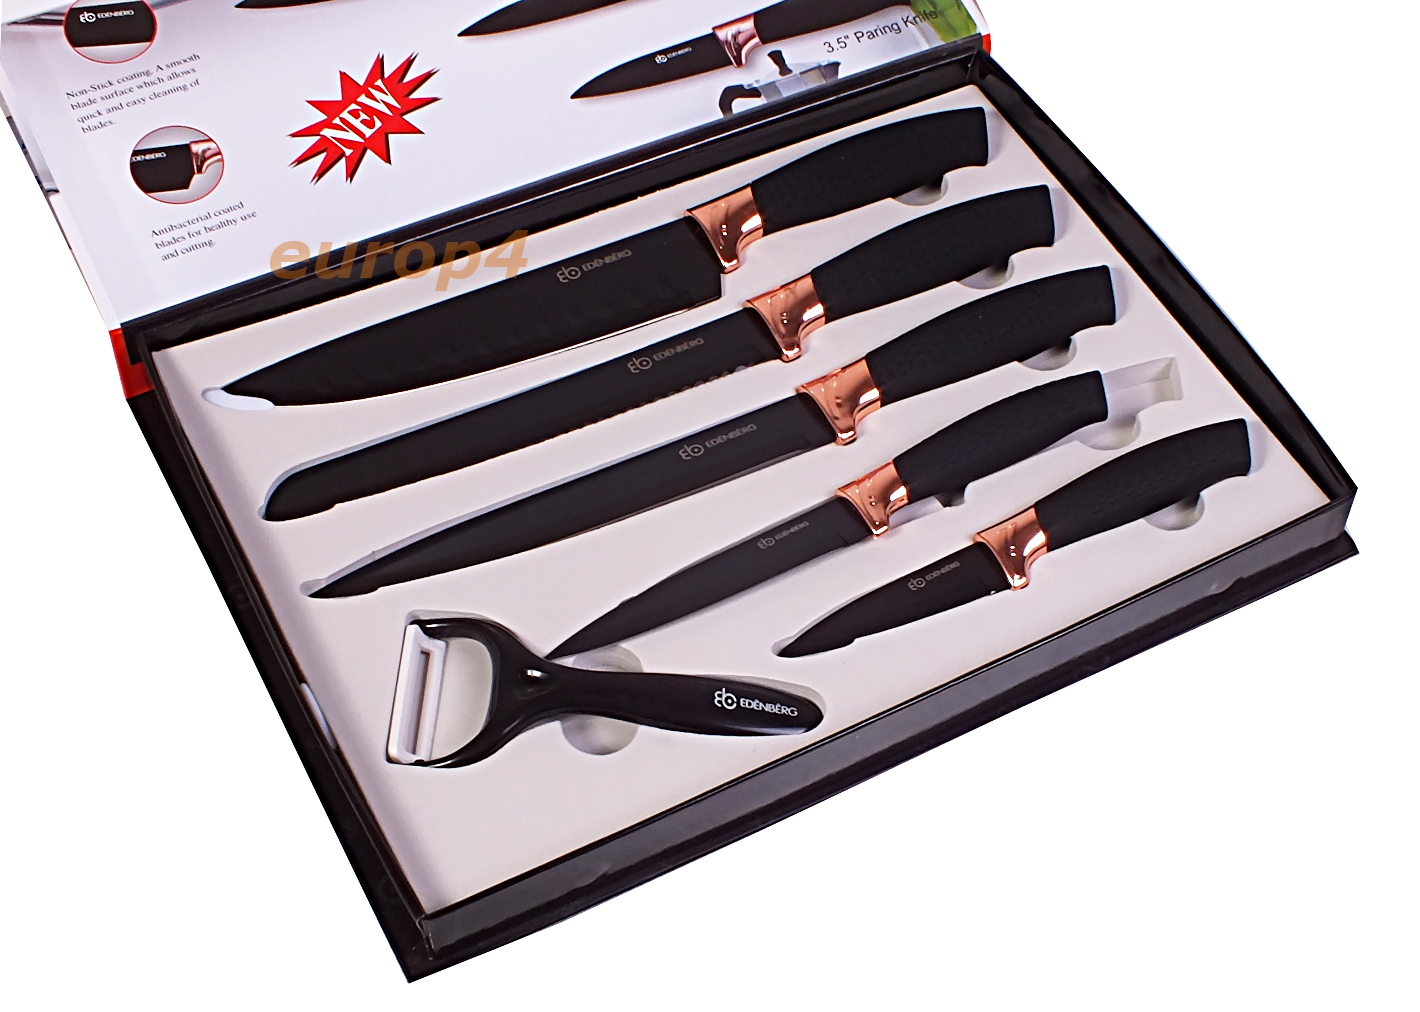 Noże Edenberg EB 7776 kuchenne stalowe SOLIDNE nóż zestaw